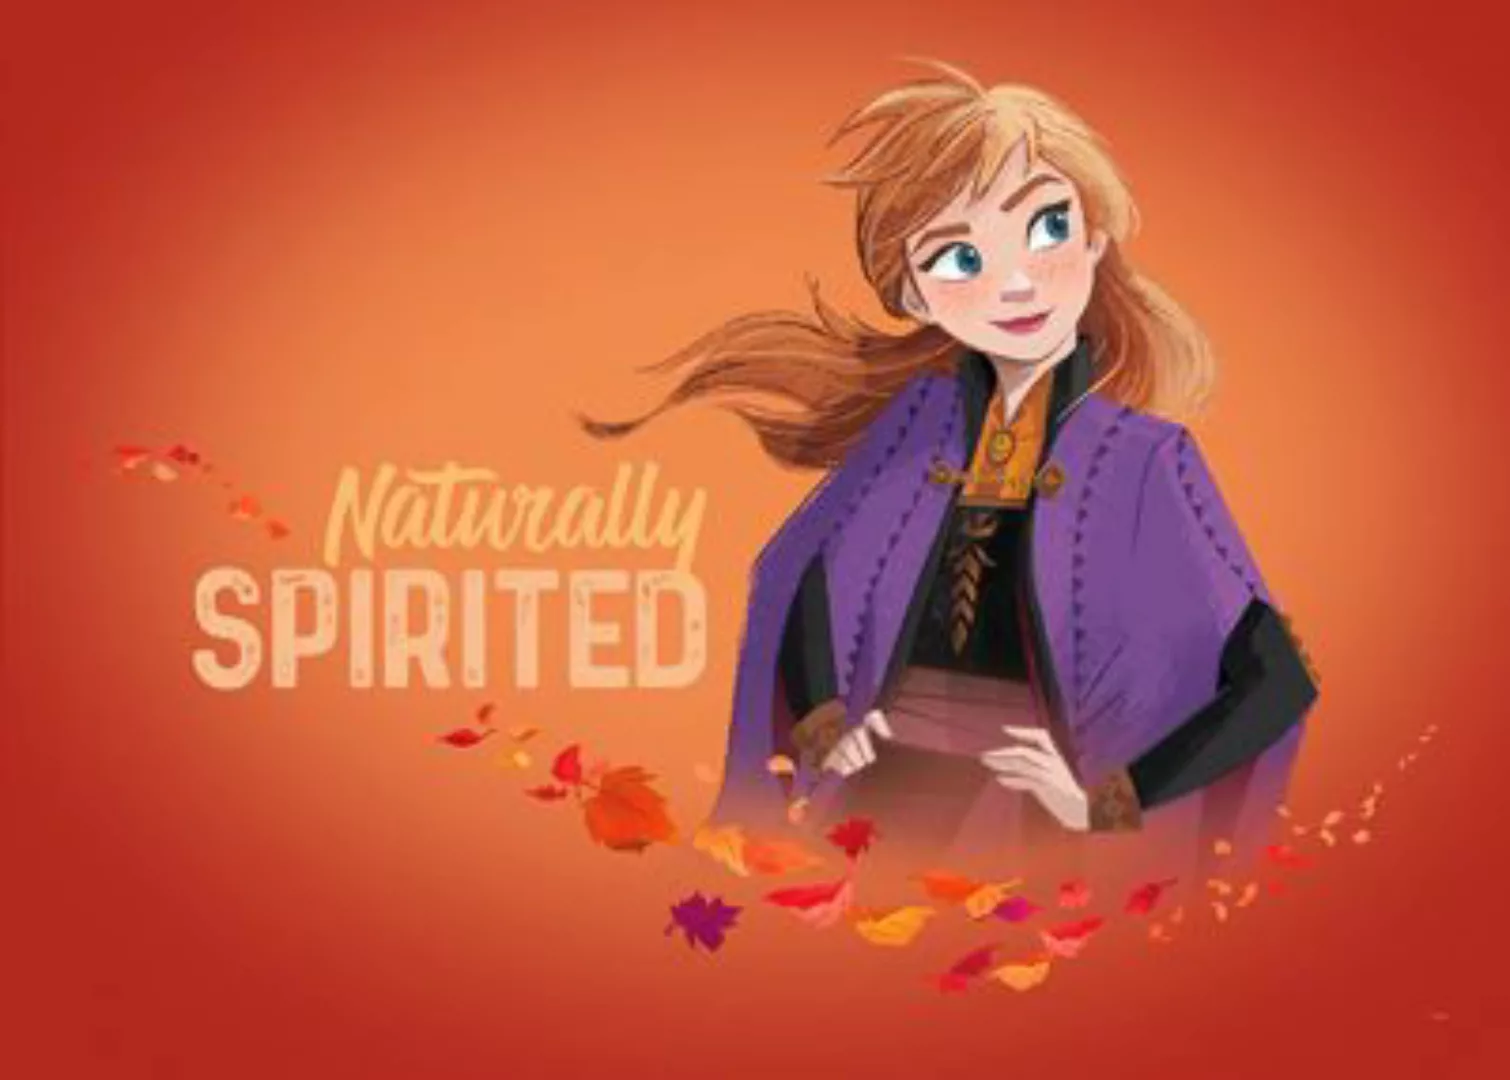 KOMAR Wandbild - Frozen 2 Anna Autumn Spirit - Größe: 70 x 50 cm mehrfarbig günstig online kaufen